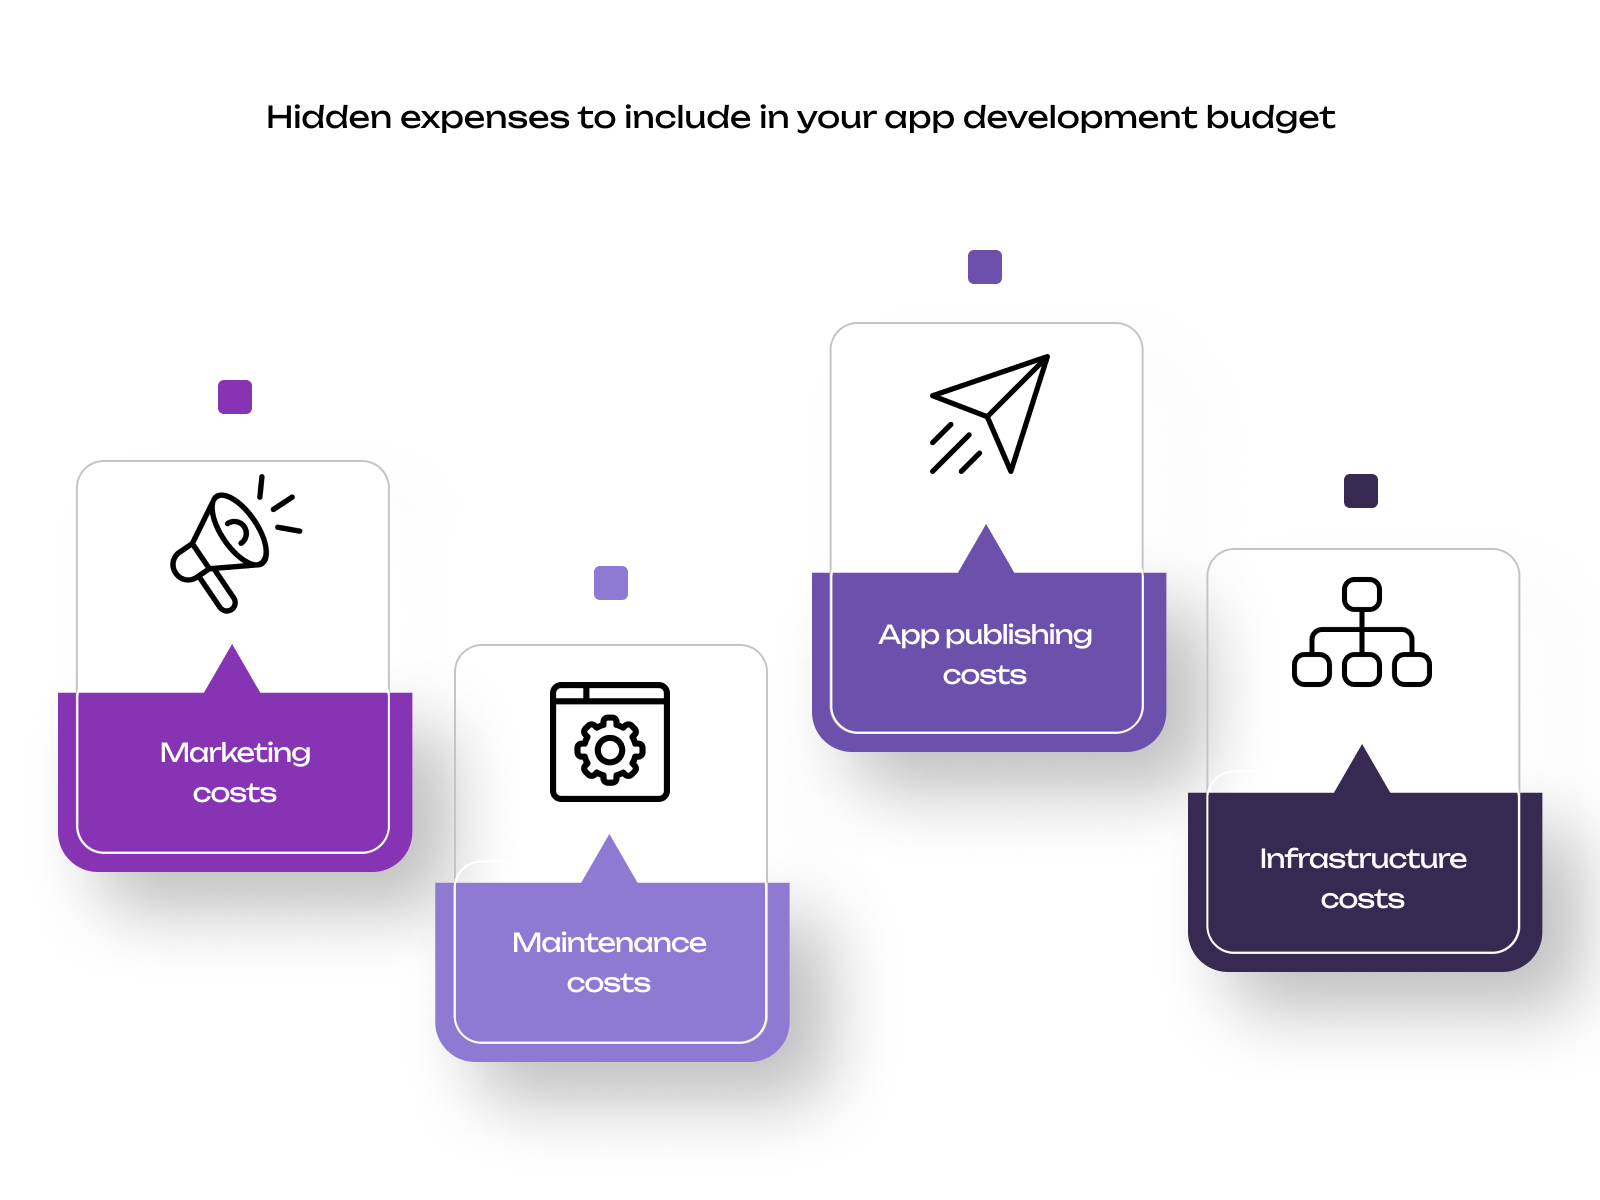 app development budget: Hidden expenses